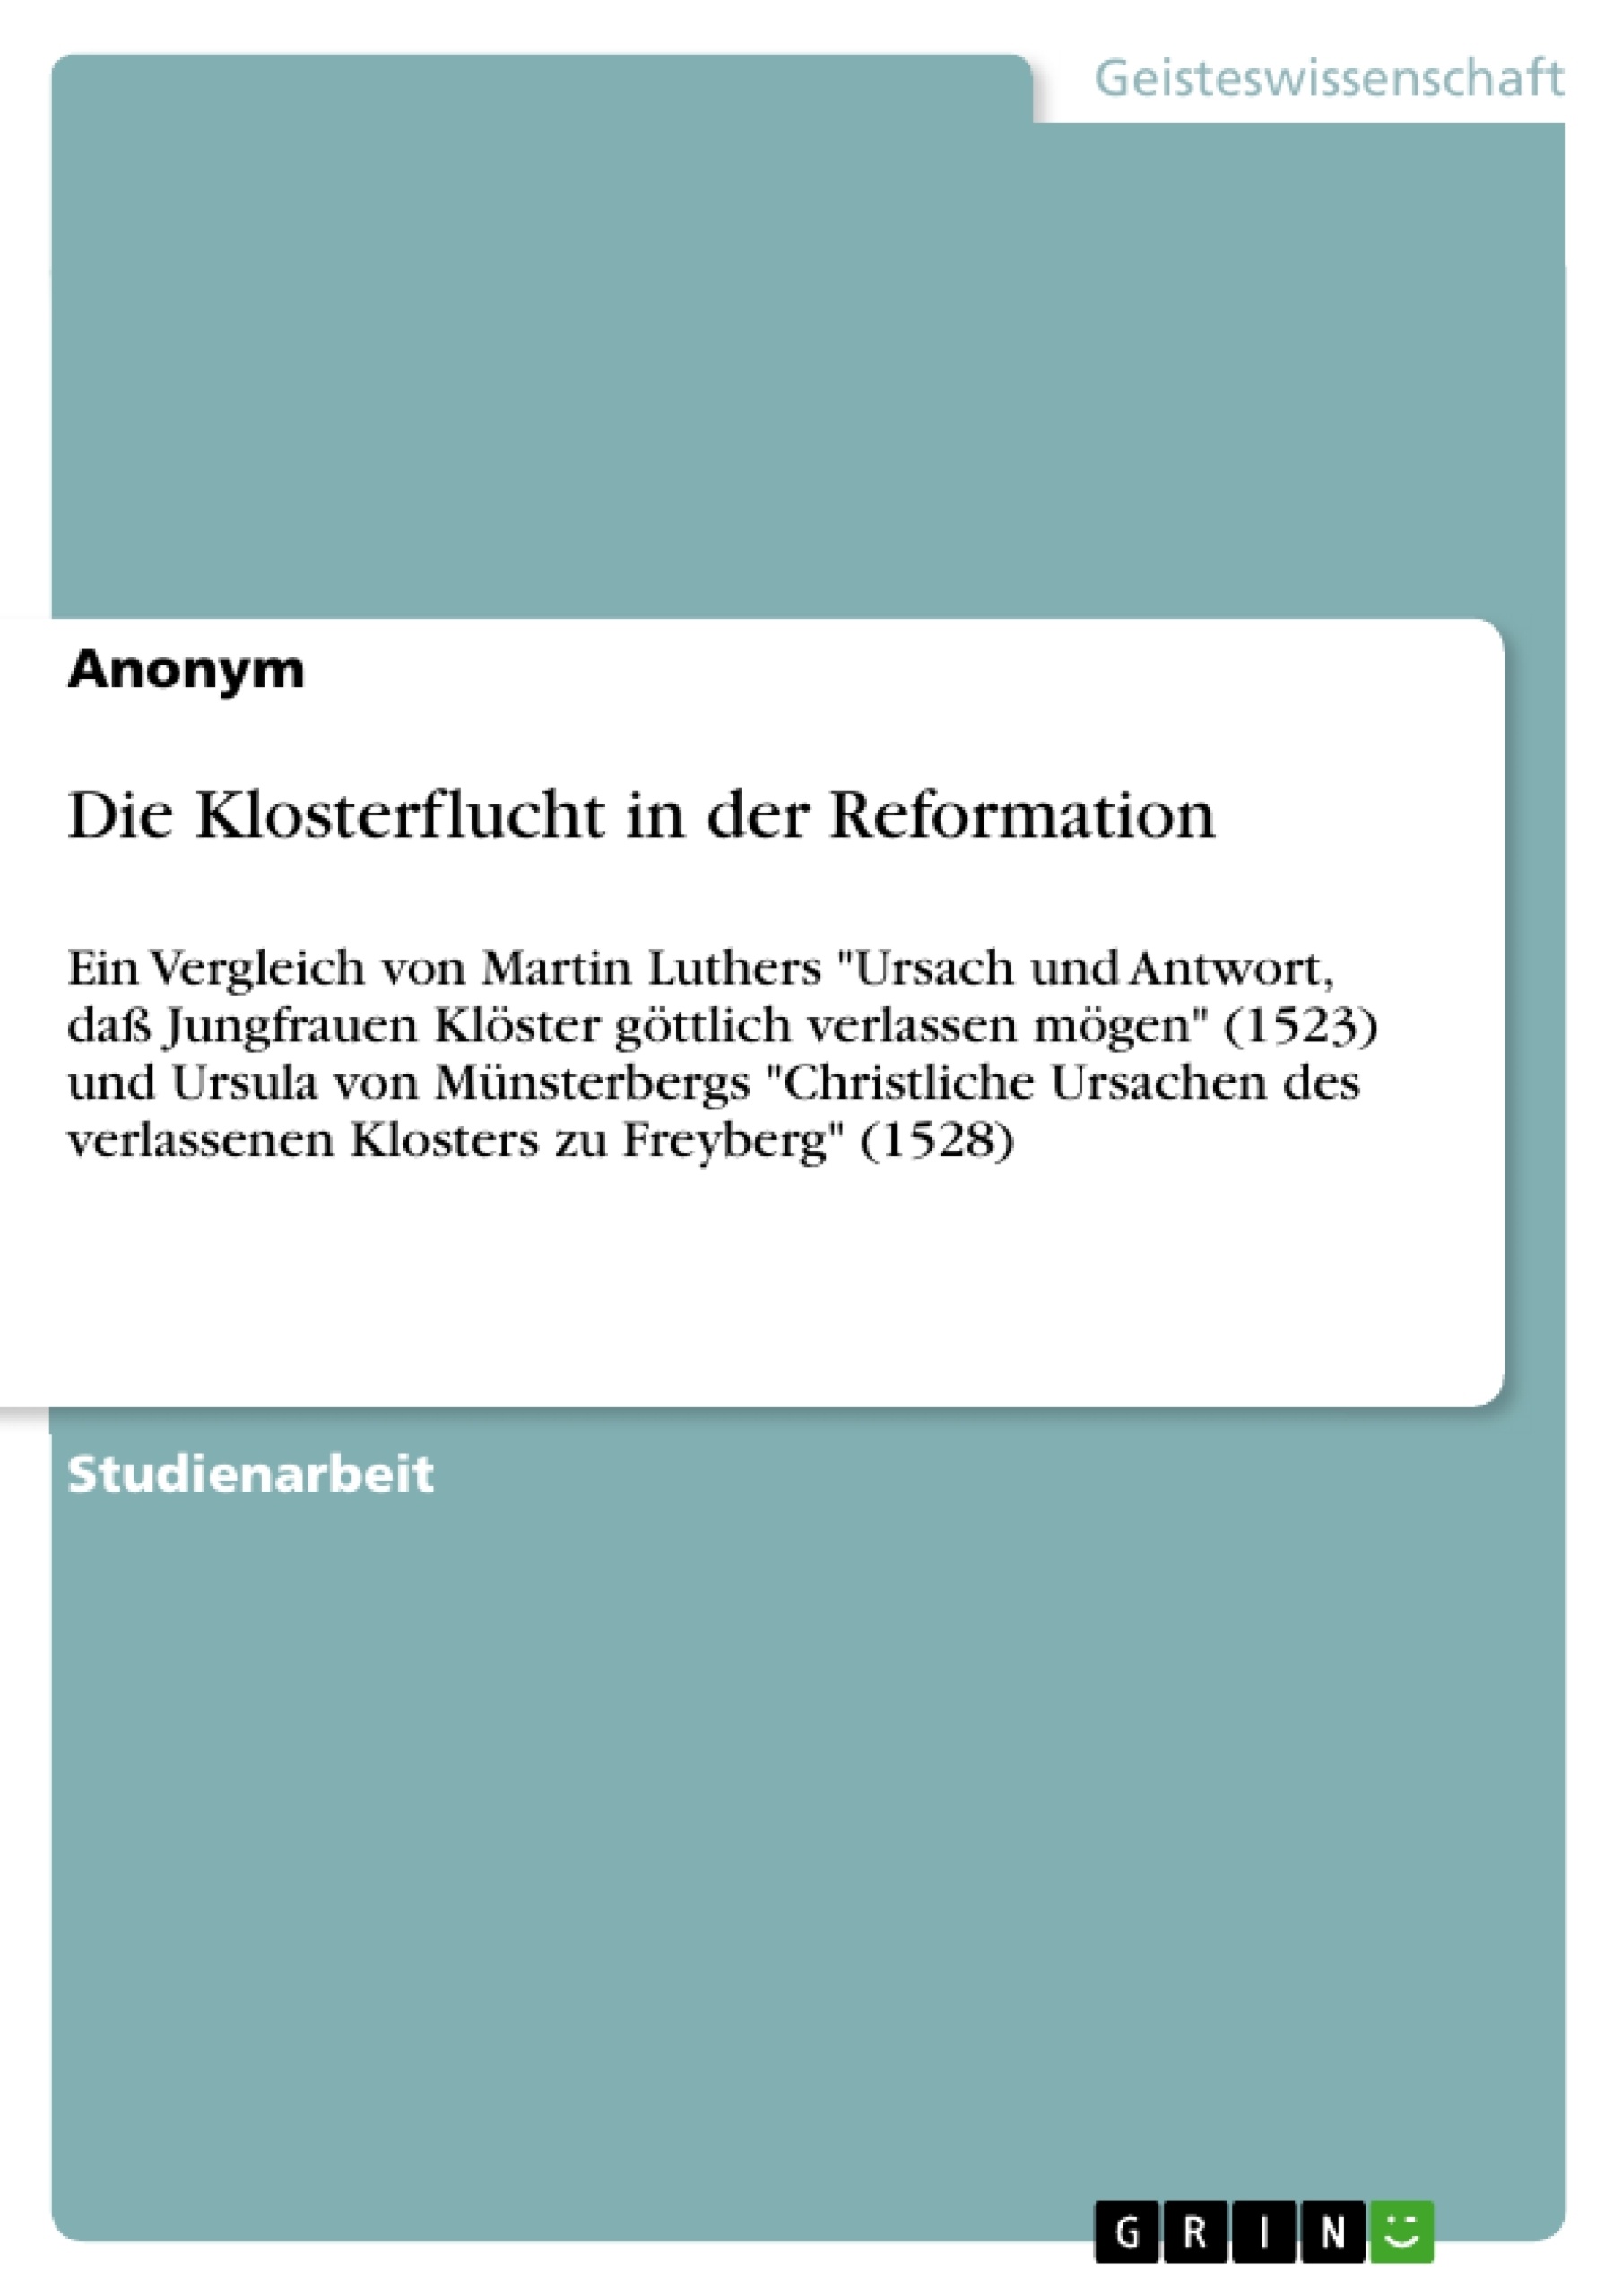 Title: Die Klosterflucht in der Reformation